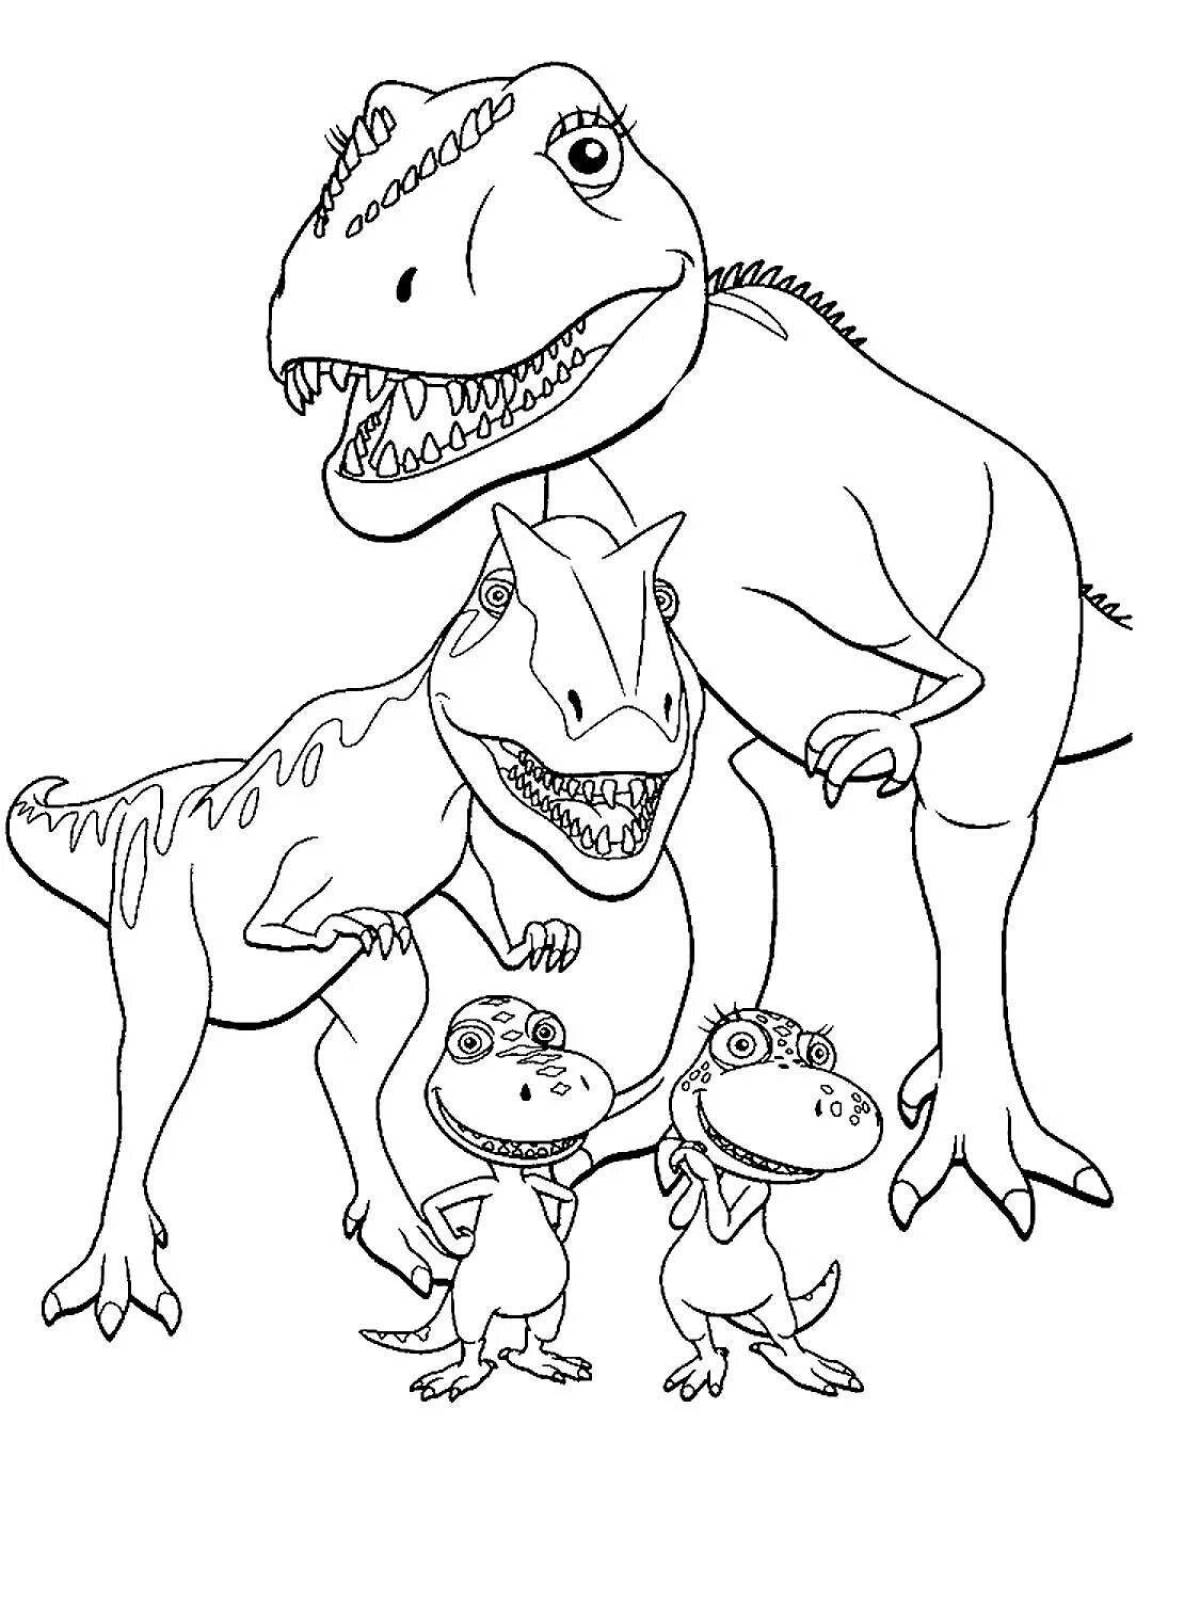 Exquisite tyrannosaurus rex coloring book for kids